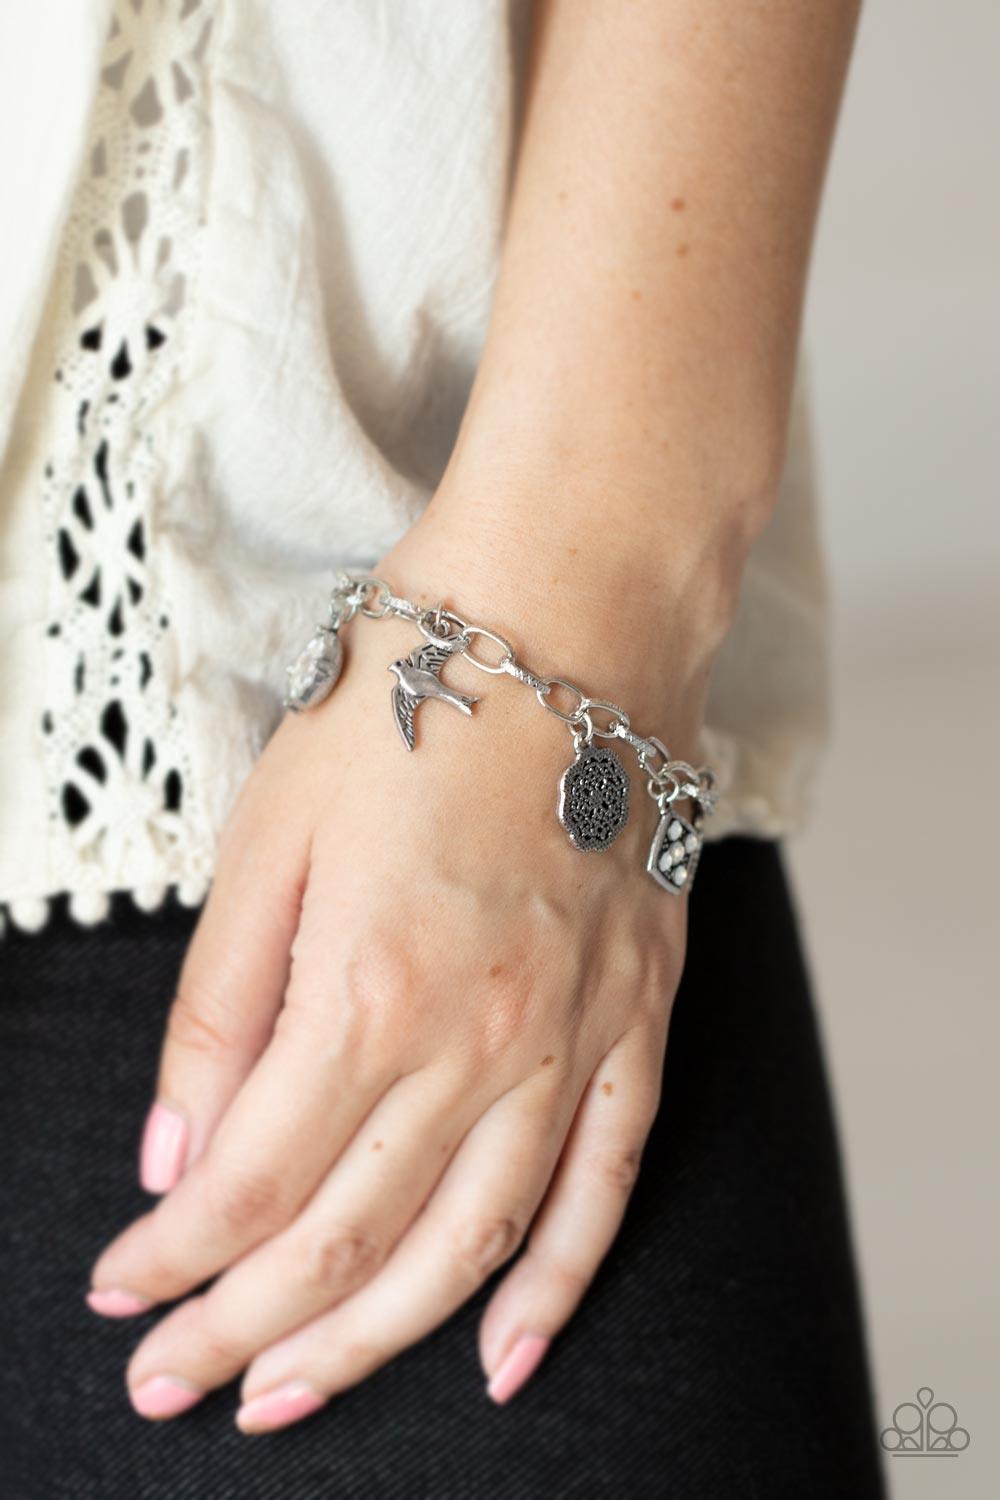 Fancifully Flighty White Bracelet - Jewelry by Bretta